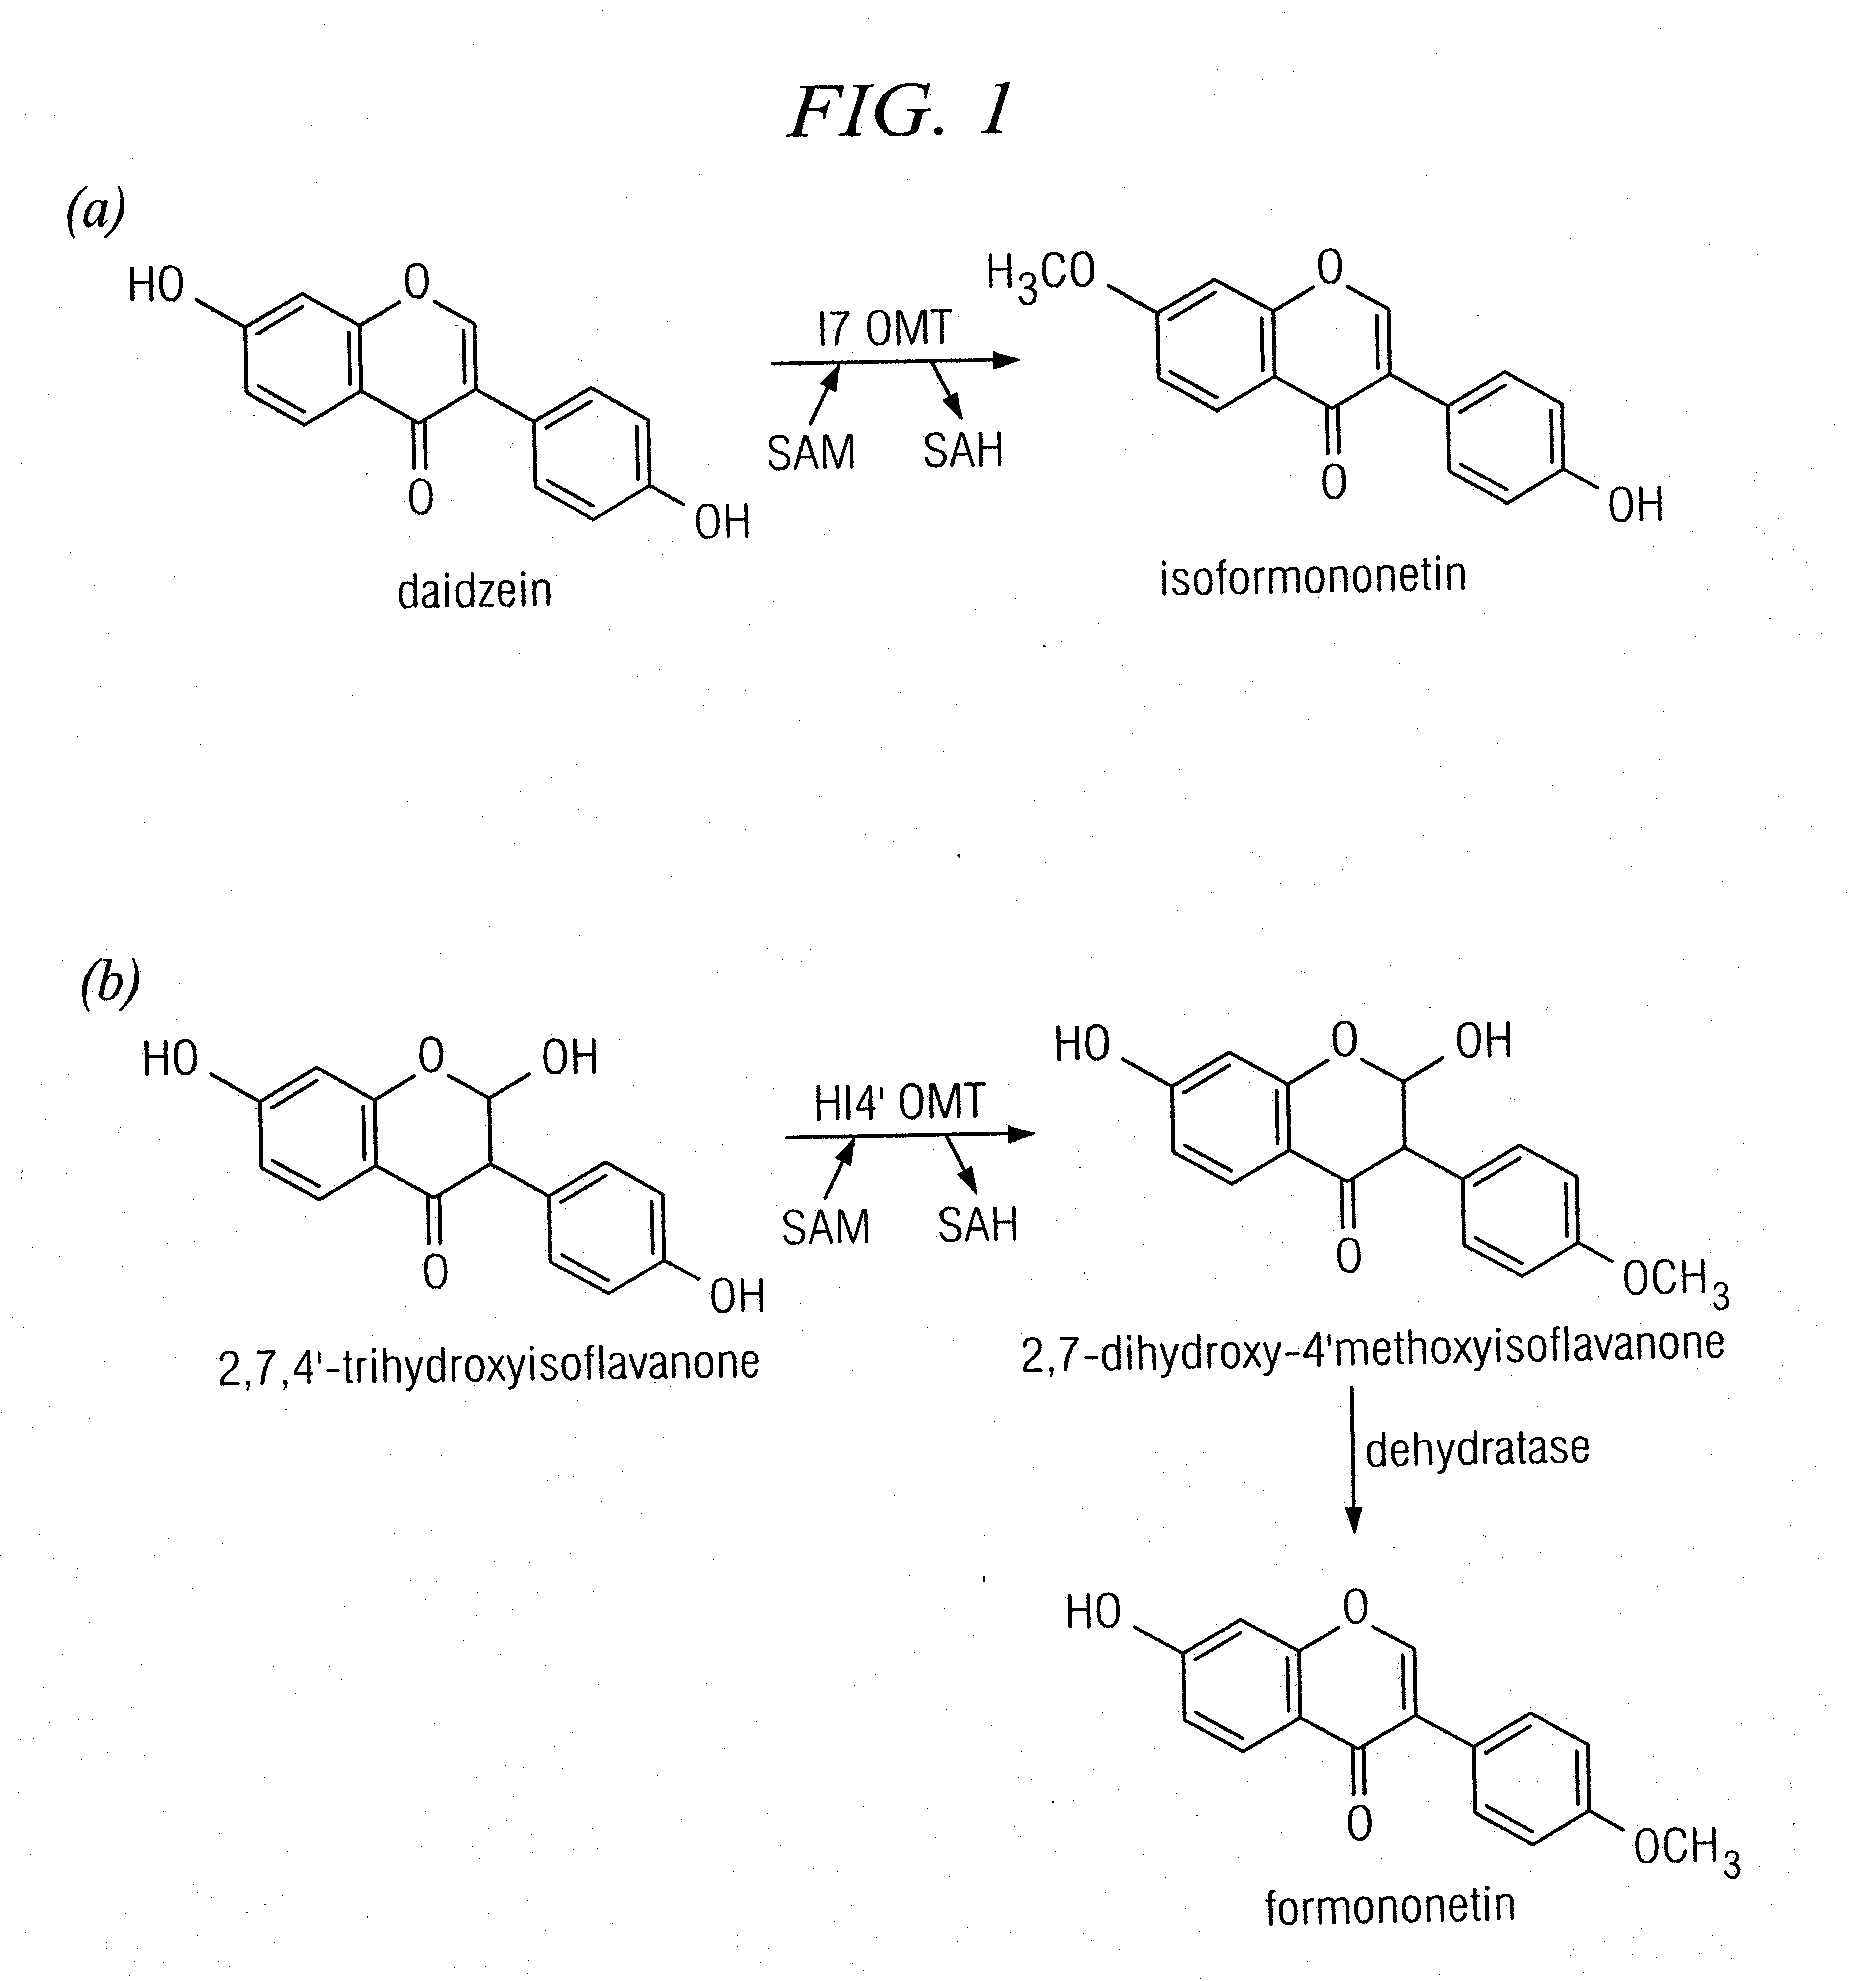 Plant isoflavone and isoflavanone o-methyltransferase genes